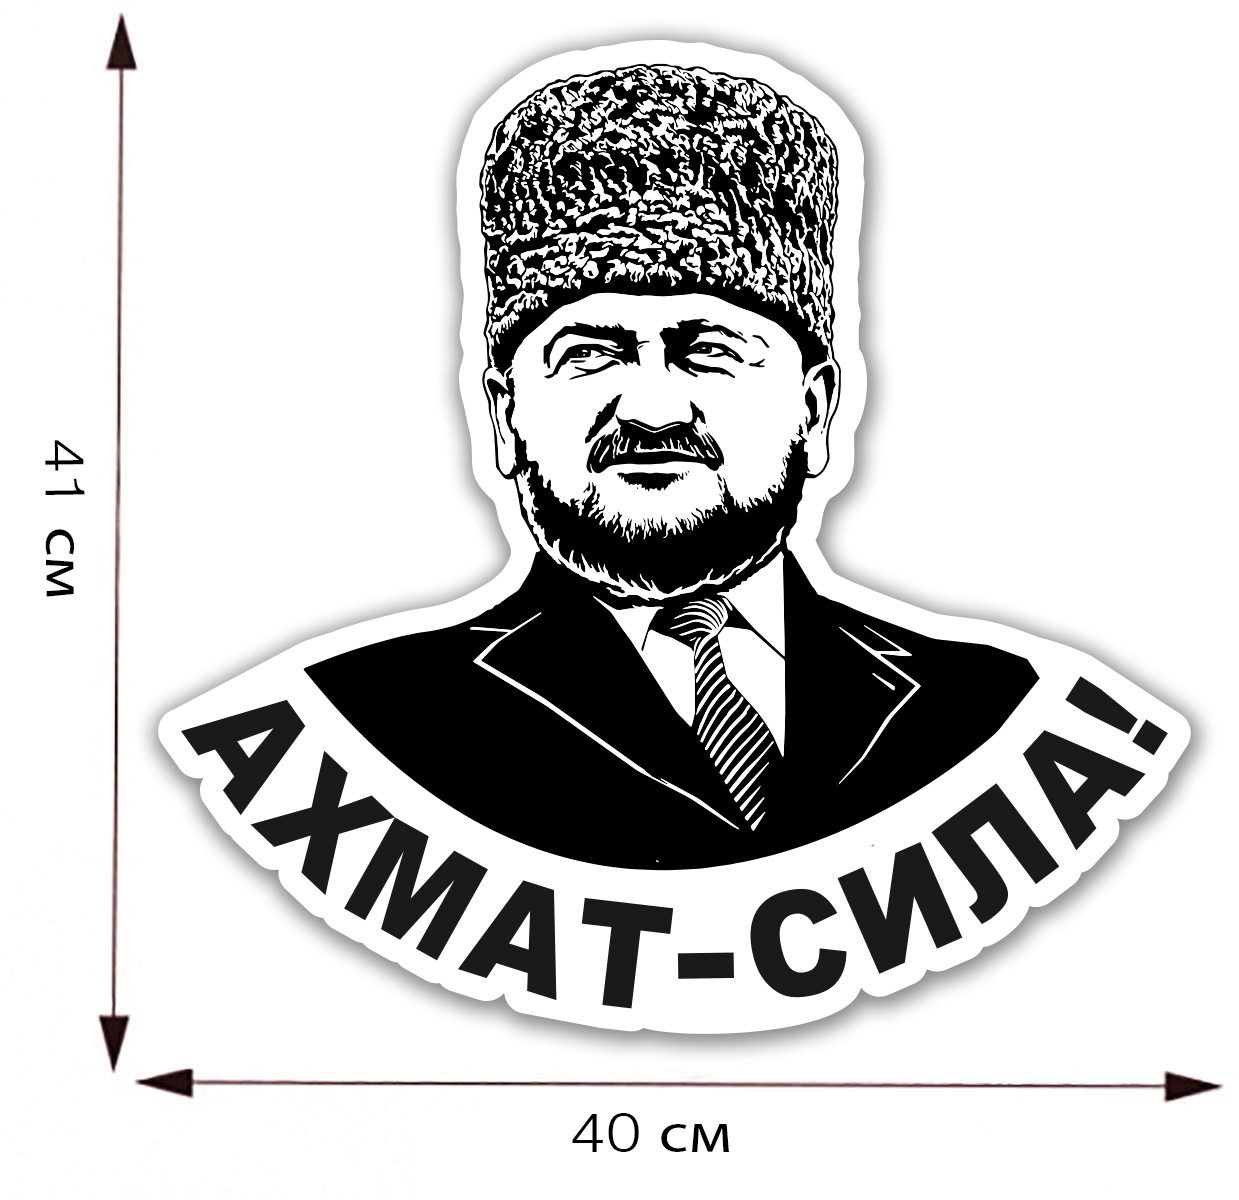 Большая наклейка "Ахмат - Сила!" с портретом Ахмата Кадырова - размер